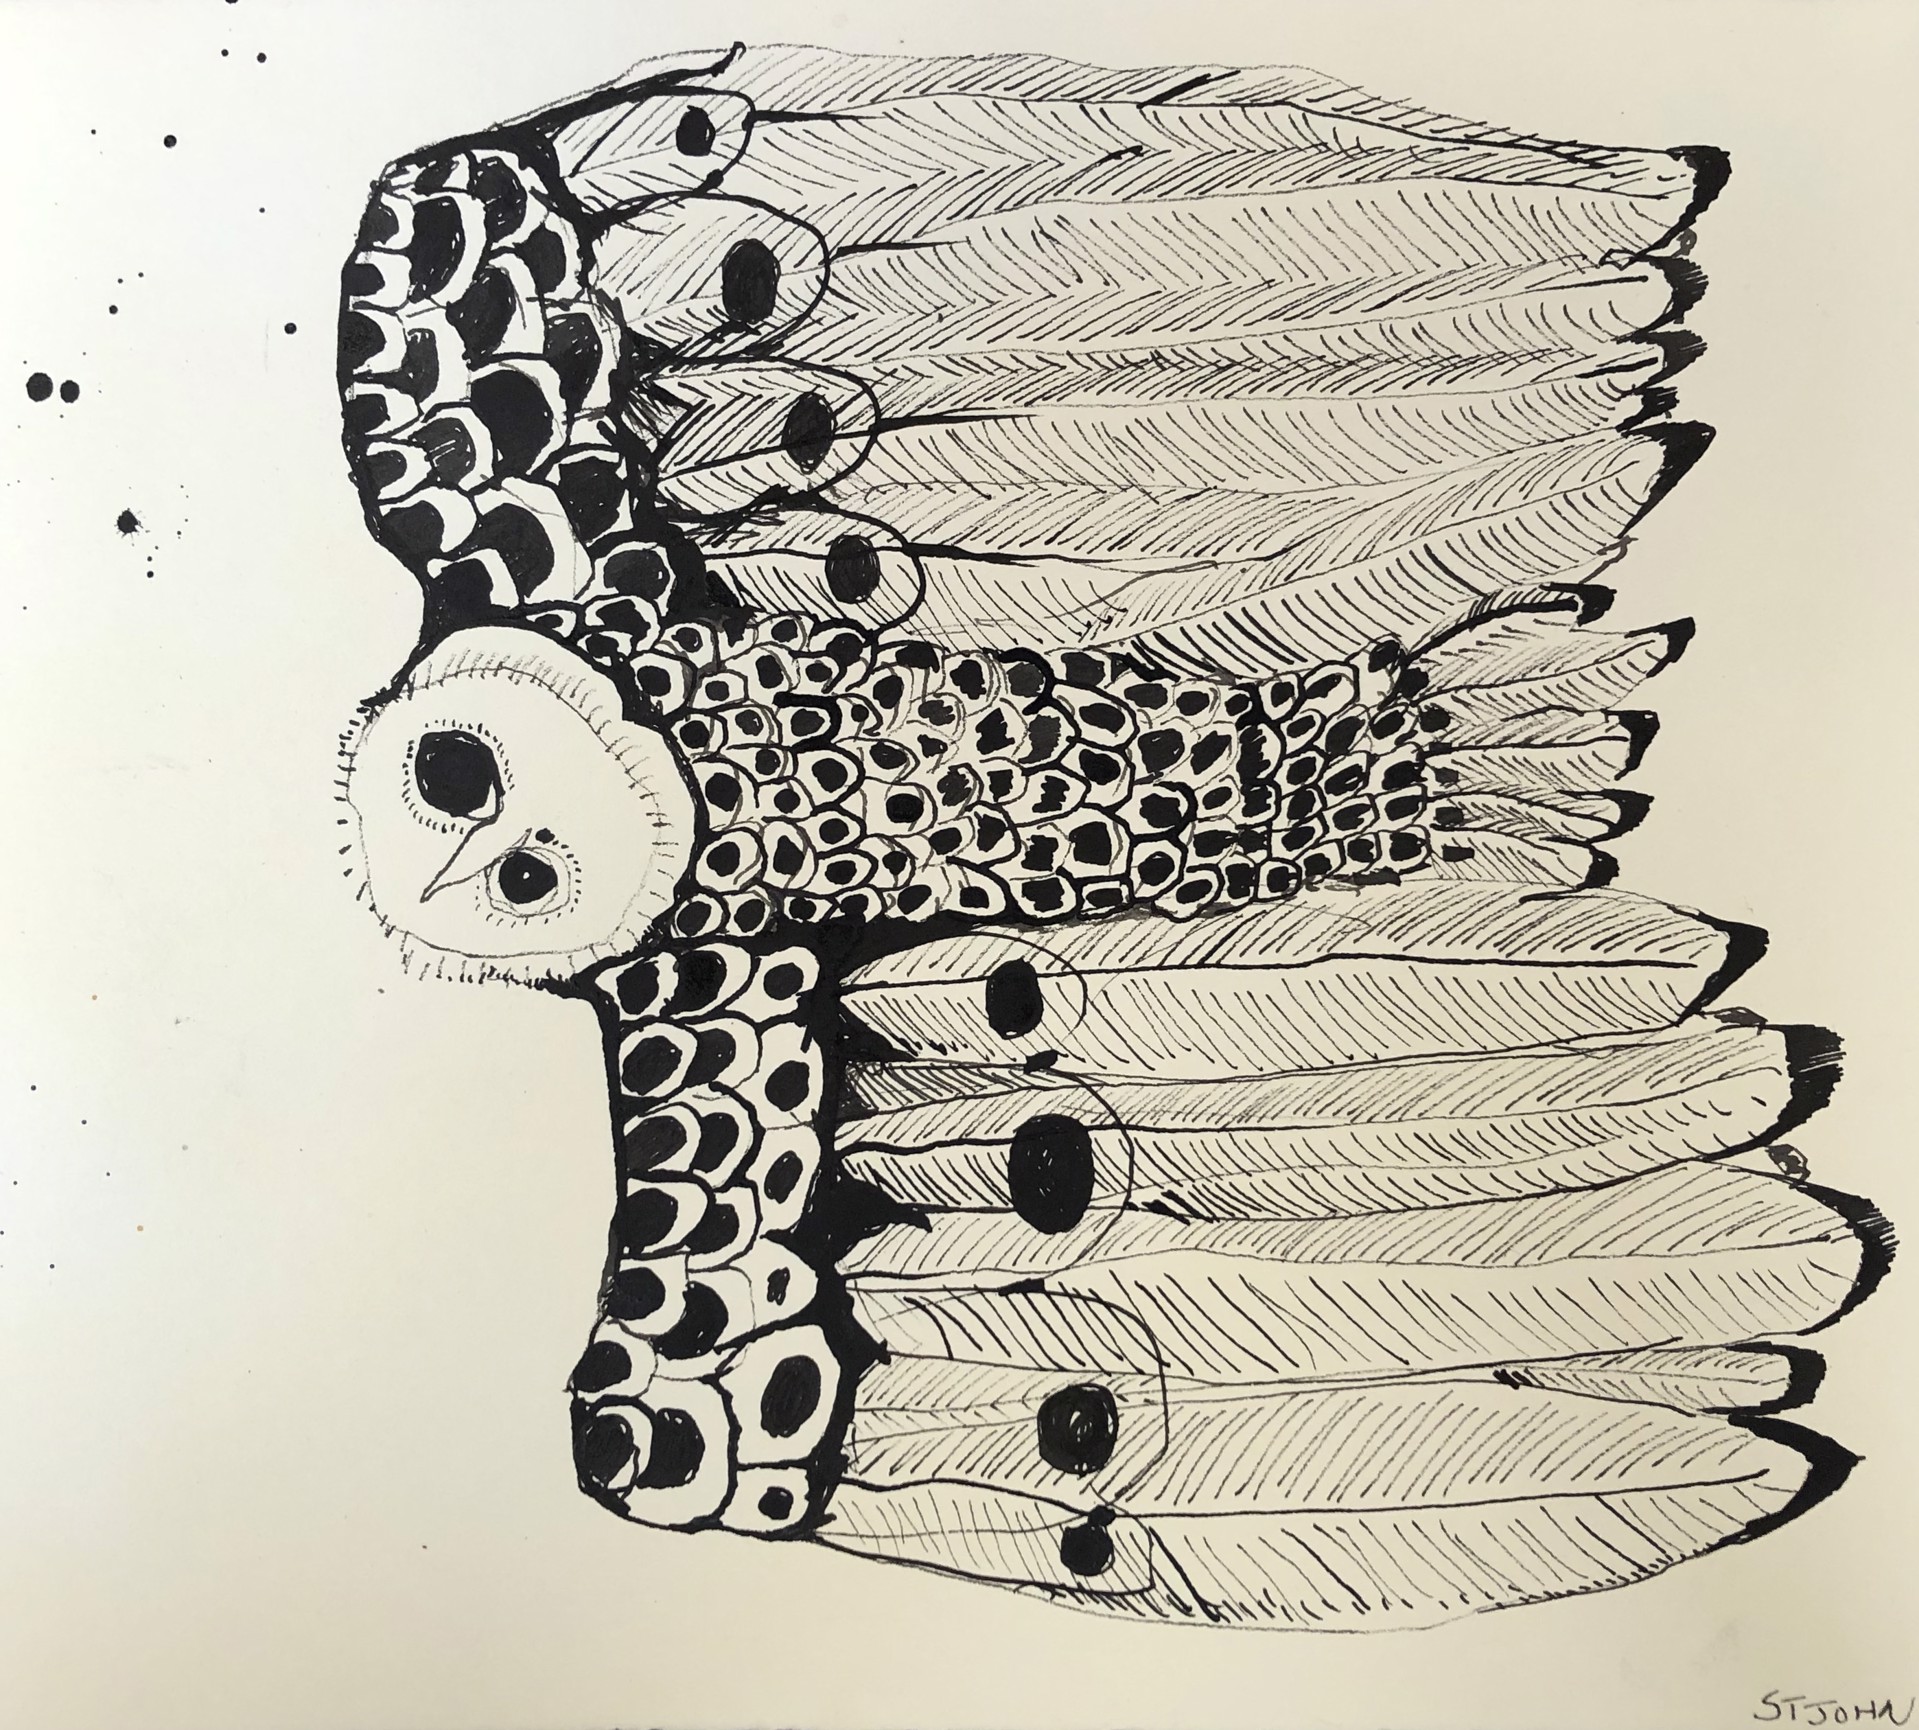 Owl by Christopher St. John